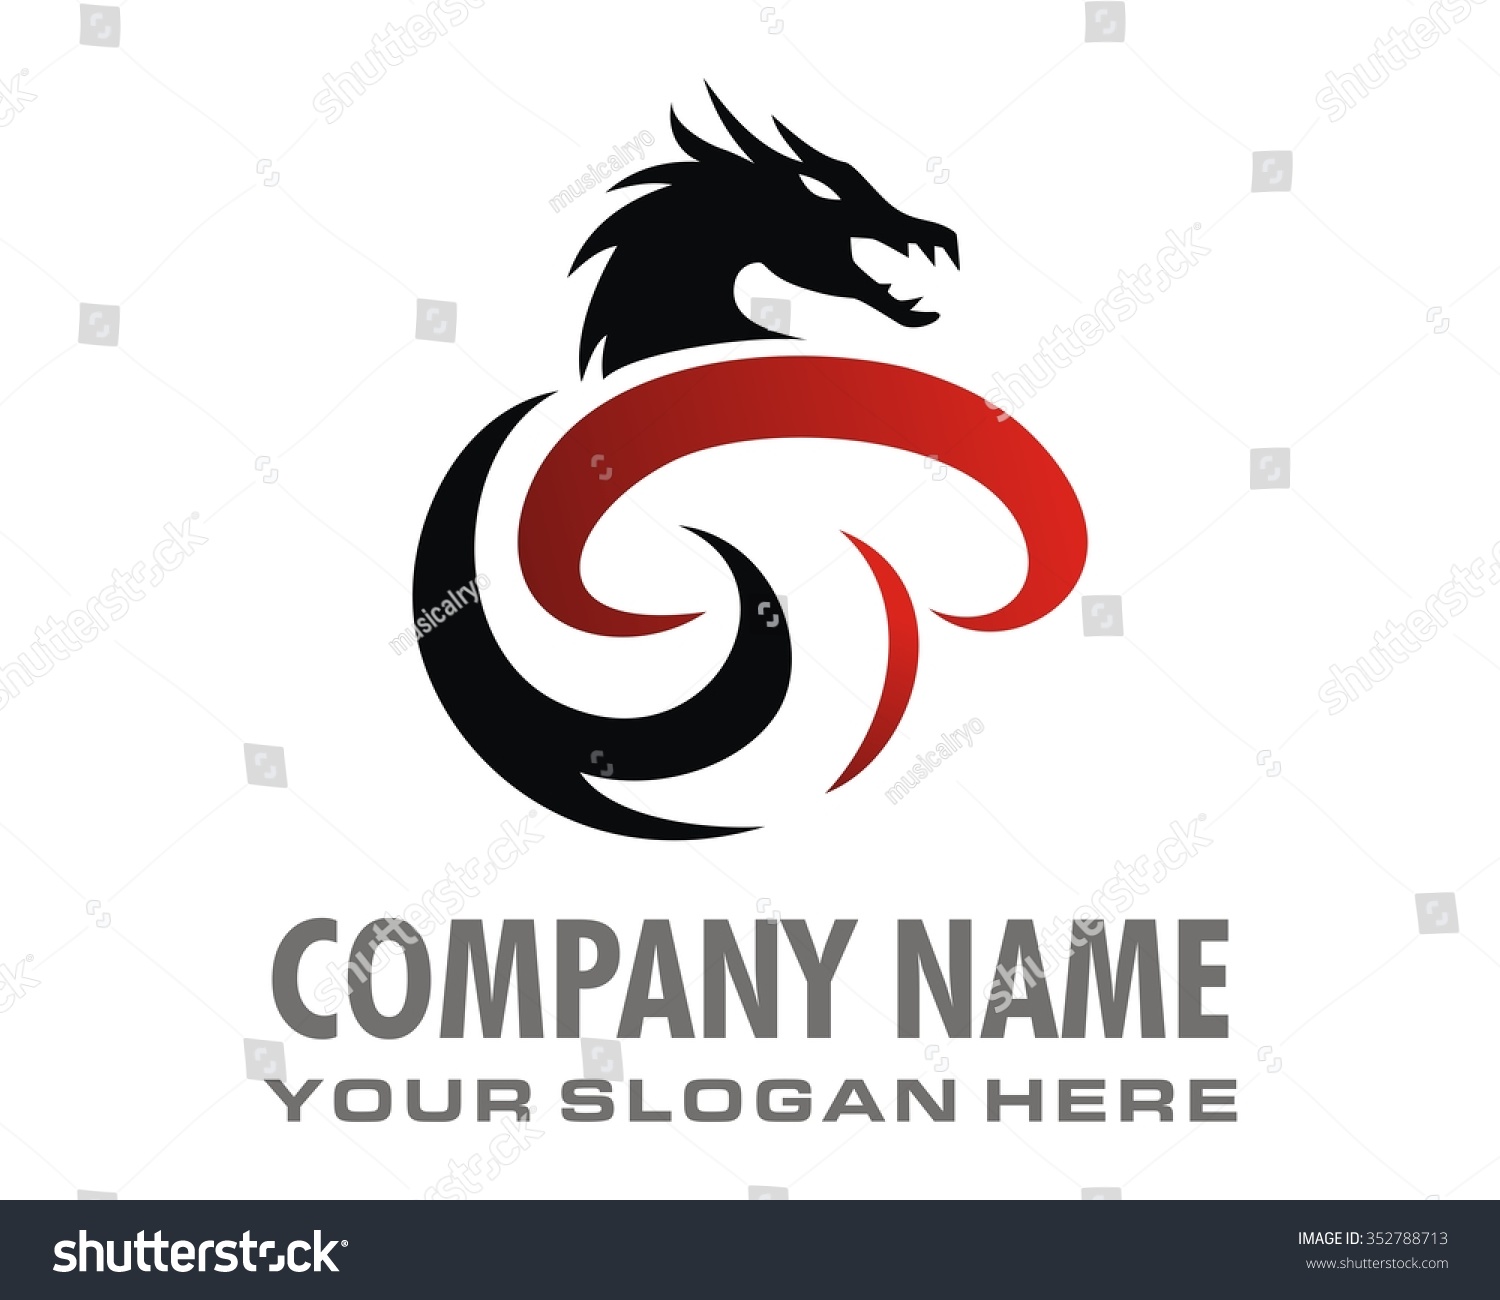 Dragon Logo Icon Vector - 352788713 : Shutterstock